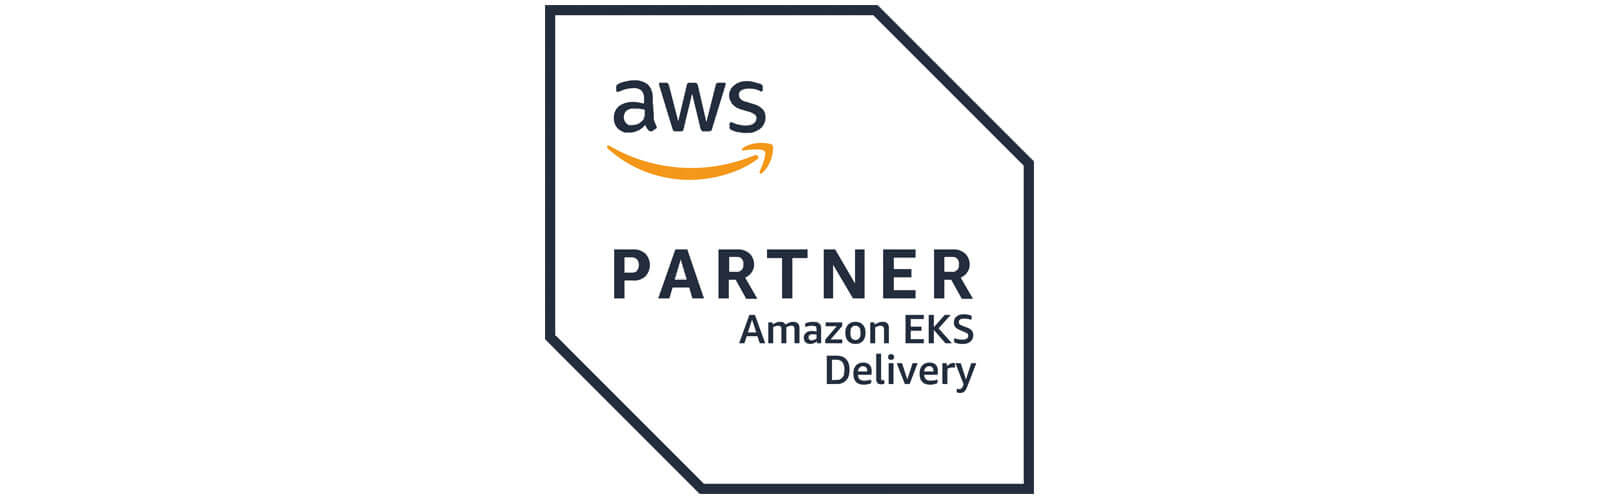 Amazon Elastic Kubernetes Service EKS